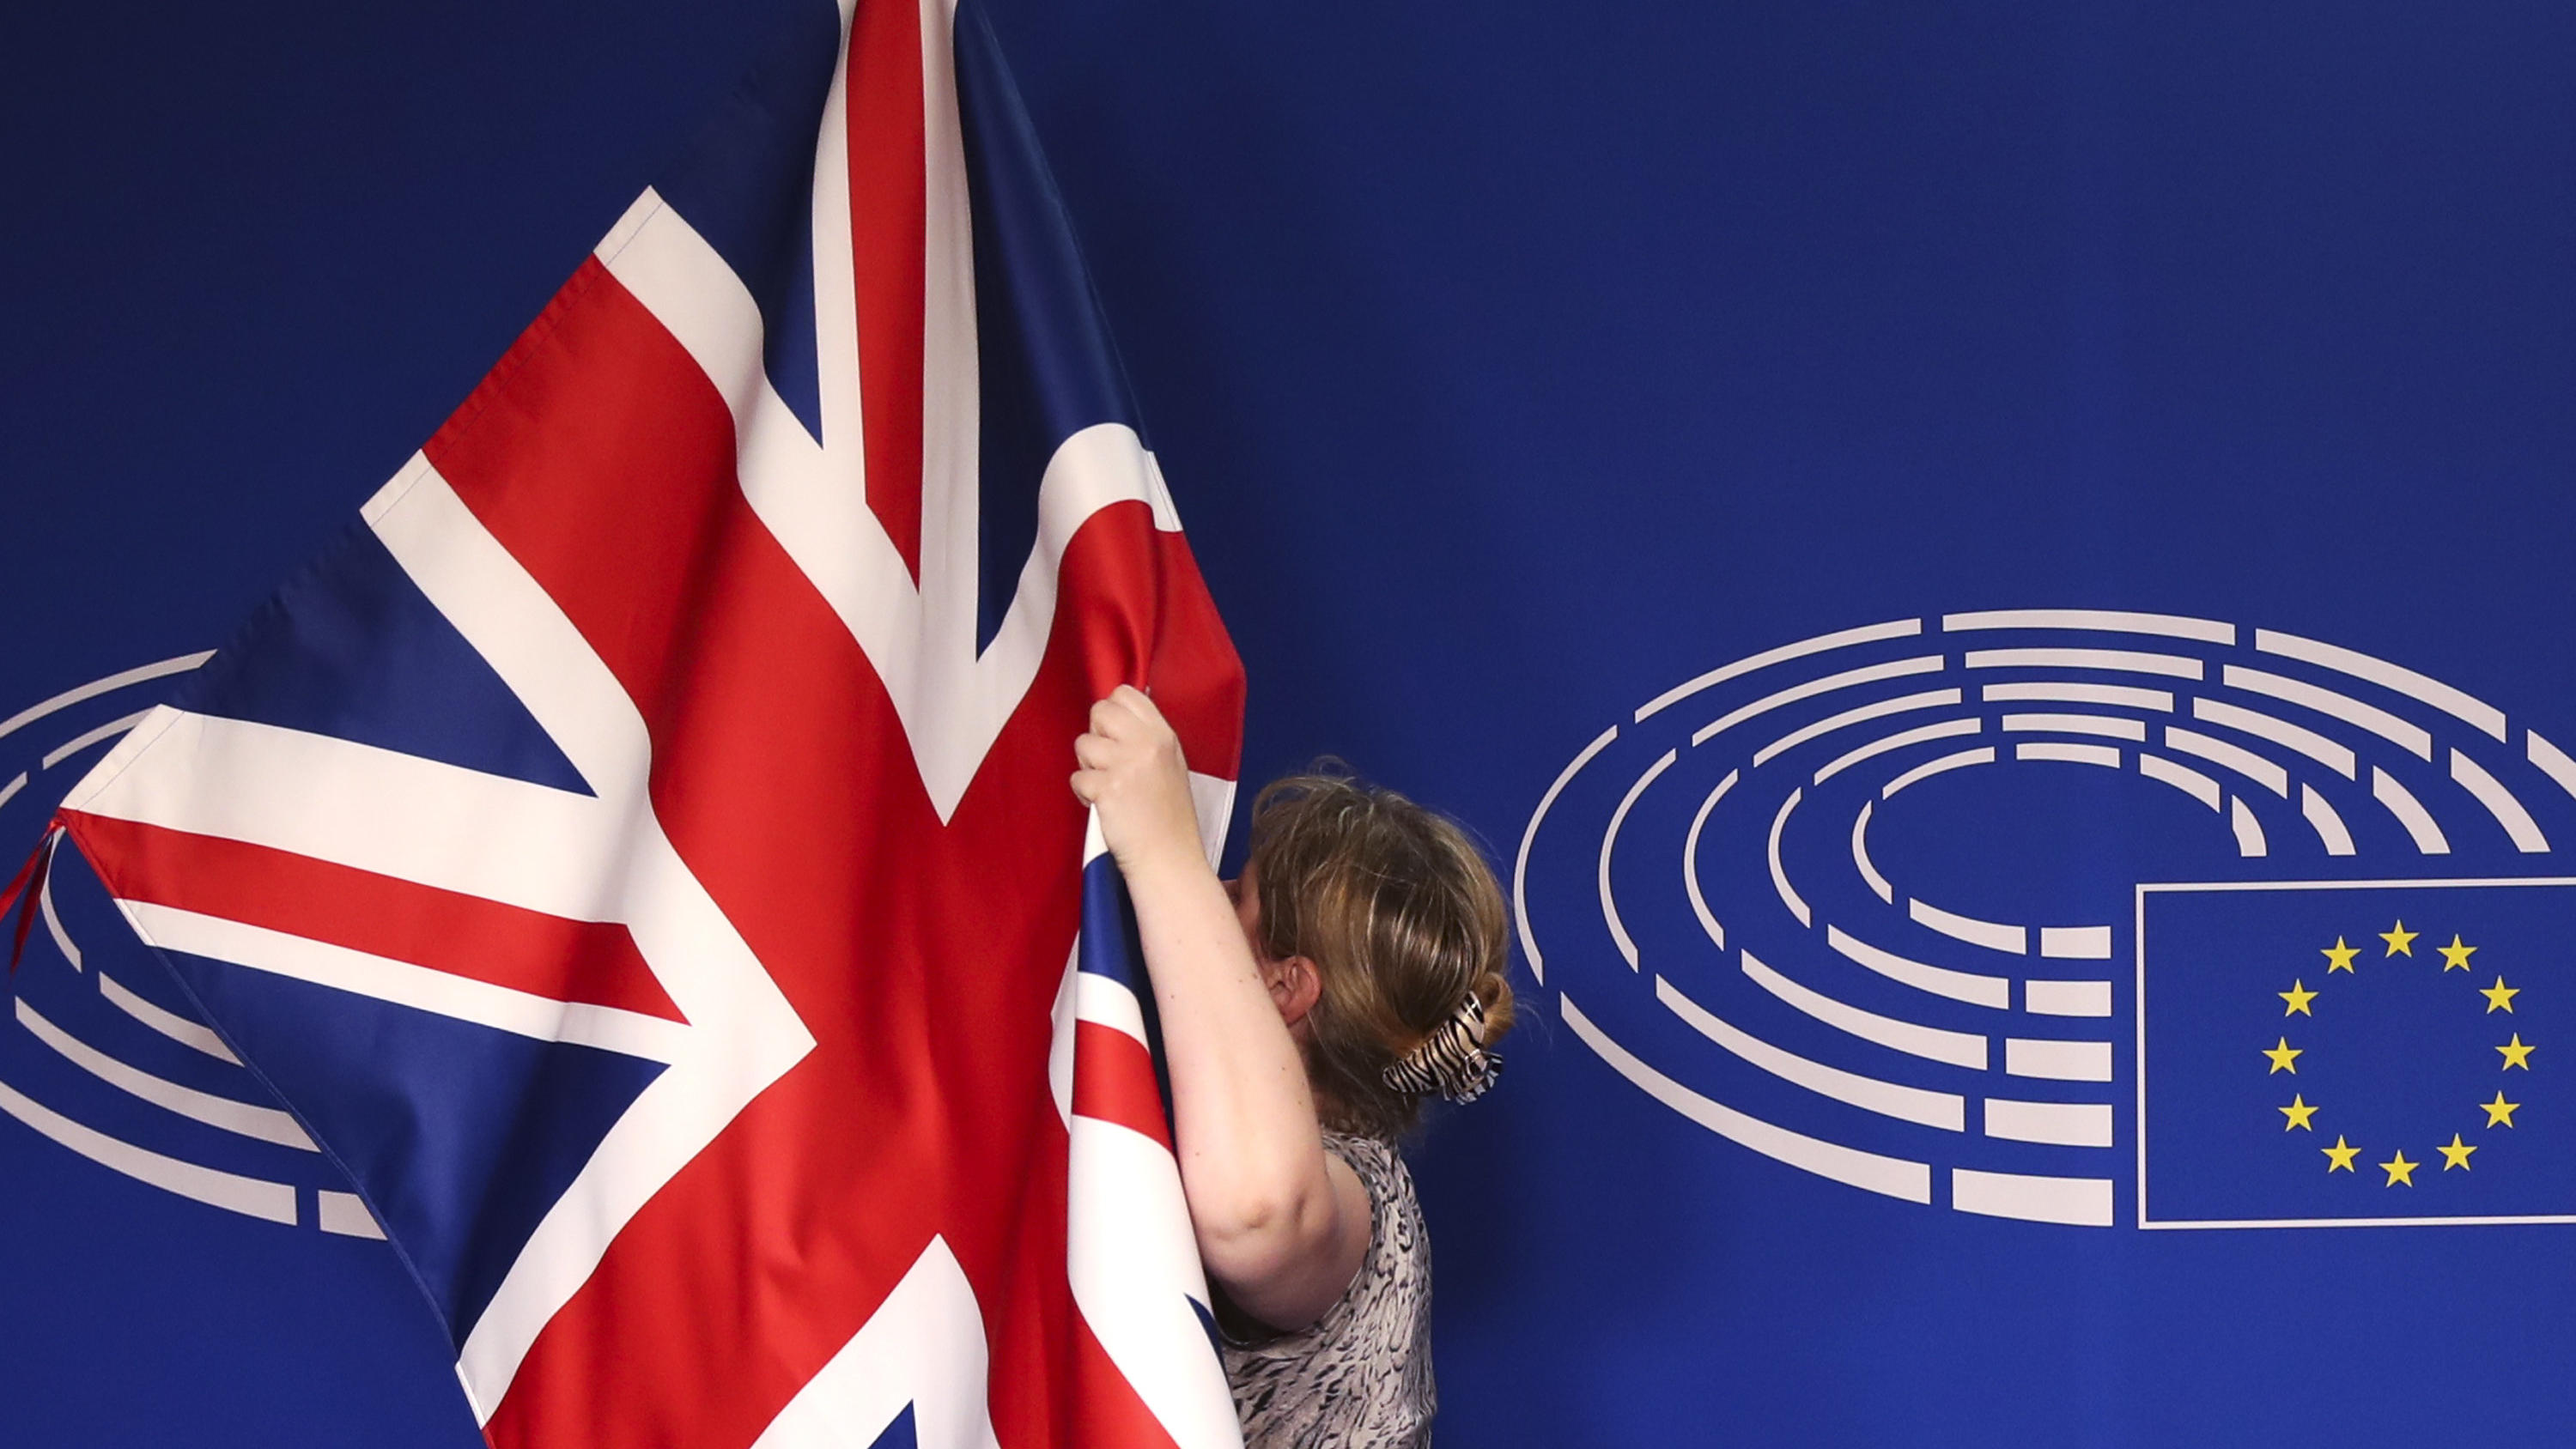 07.02.2019, Belgien, Brüssel: Eine britische Fahne wird vor der Ankunft der britischen Premierministerin für ein Treffen mit dem Präsidenten des Europäischen Parlaments befestigt. Foto: Francisco Seco/AP/dpa +++ dpa-Bildfunk +++